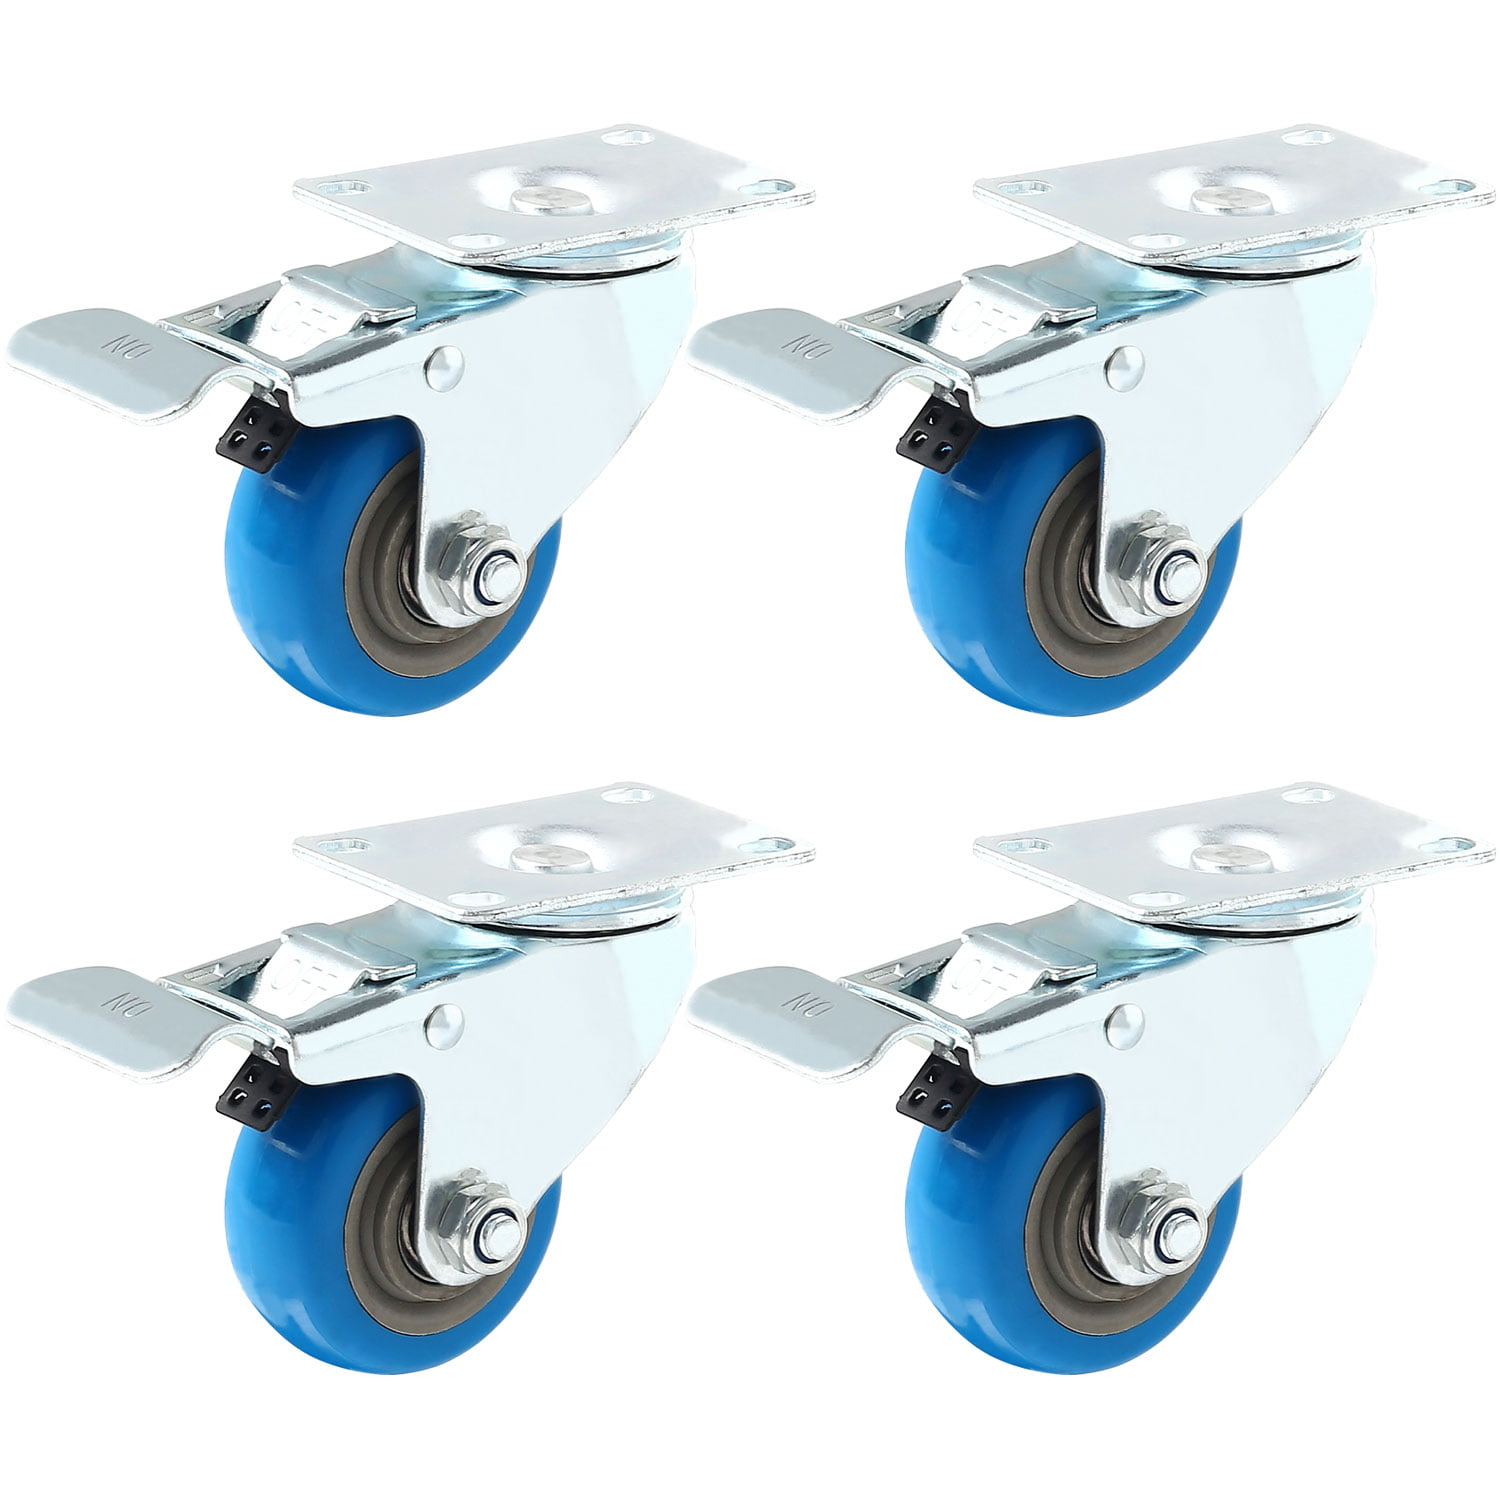 2 castors with brakes Roller Board gr-1 Blue Wheel 52x46 CM Furniture Roller Furniture Dog